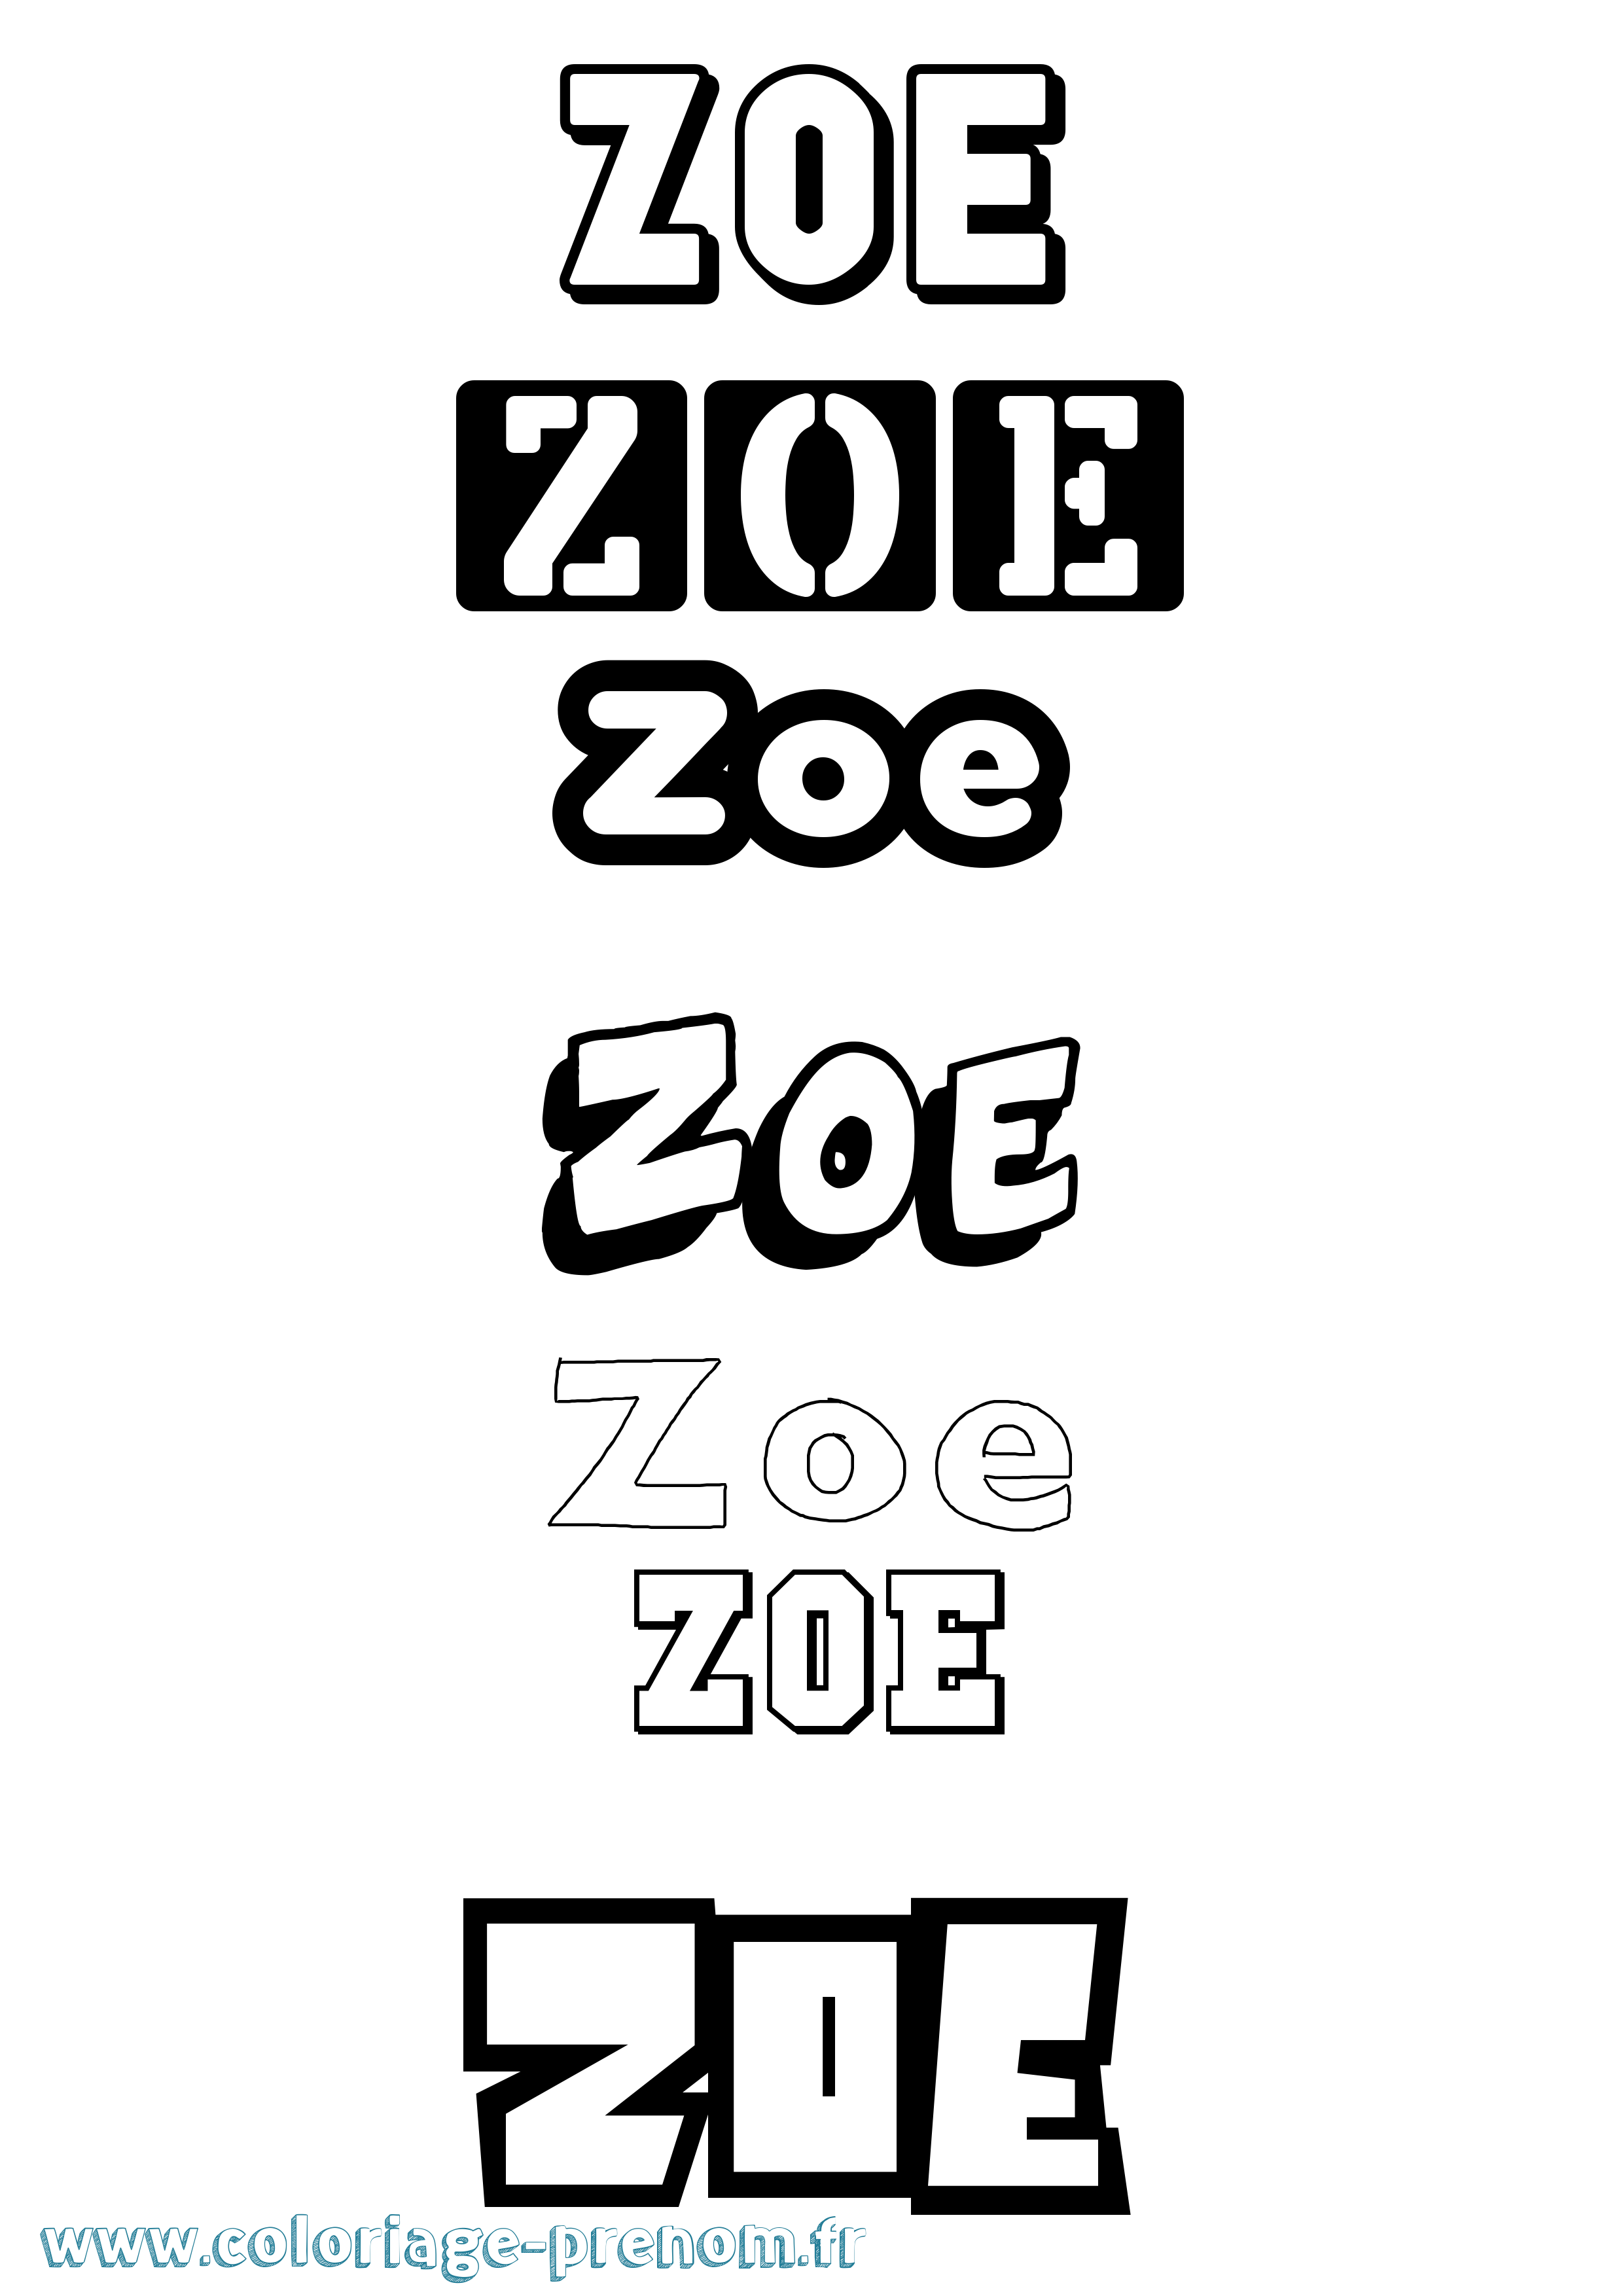 Coloriage prénom Zoe